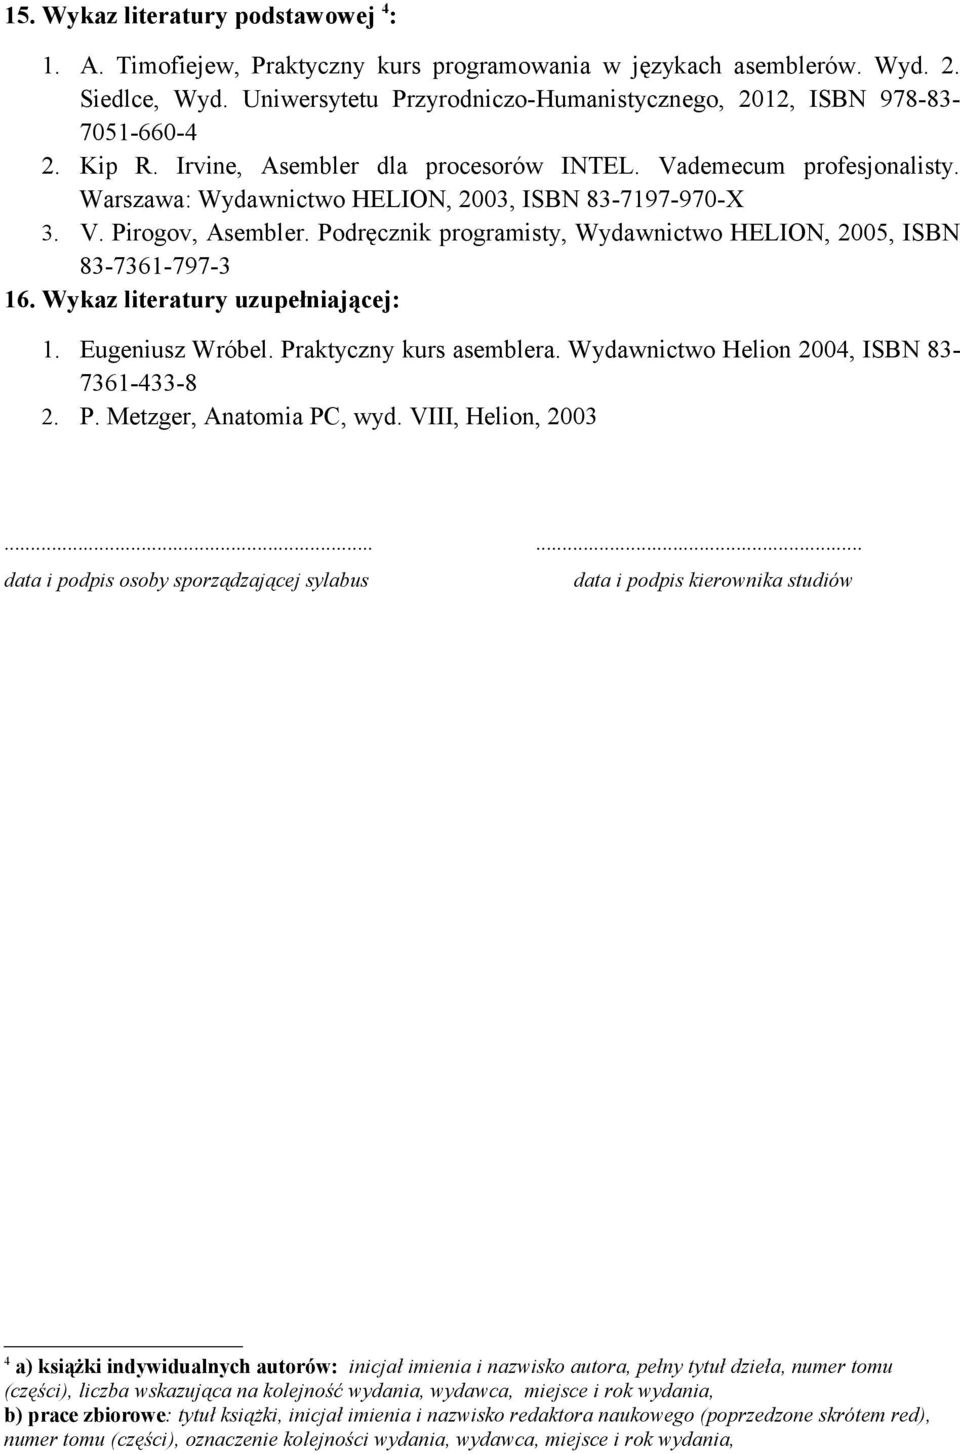 Warszawa: Wydawnictwo HELION, 2003, ISBN 83-7197-970-X 3. V. Pirogov, Asembler. Podręcznik programisty, Wydawnictwo HELION, 2005, ISBN 83-7361-797-3 16. Wykaz literatury uzupełniającej: 1.